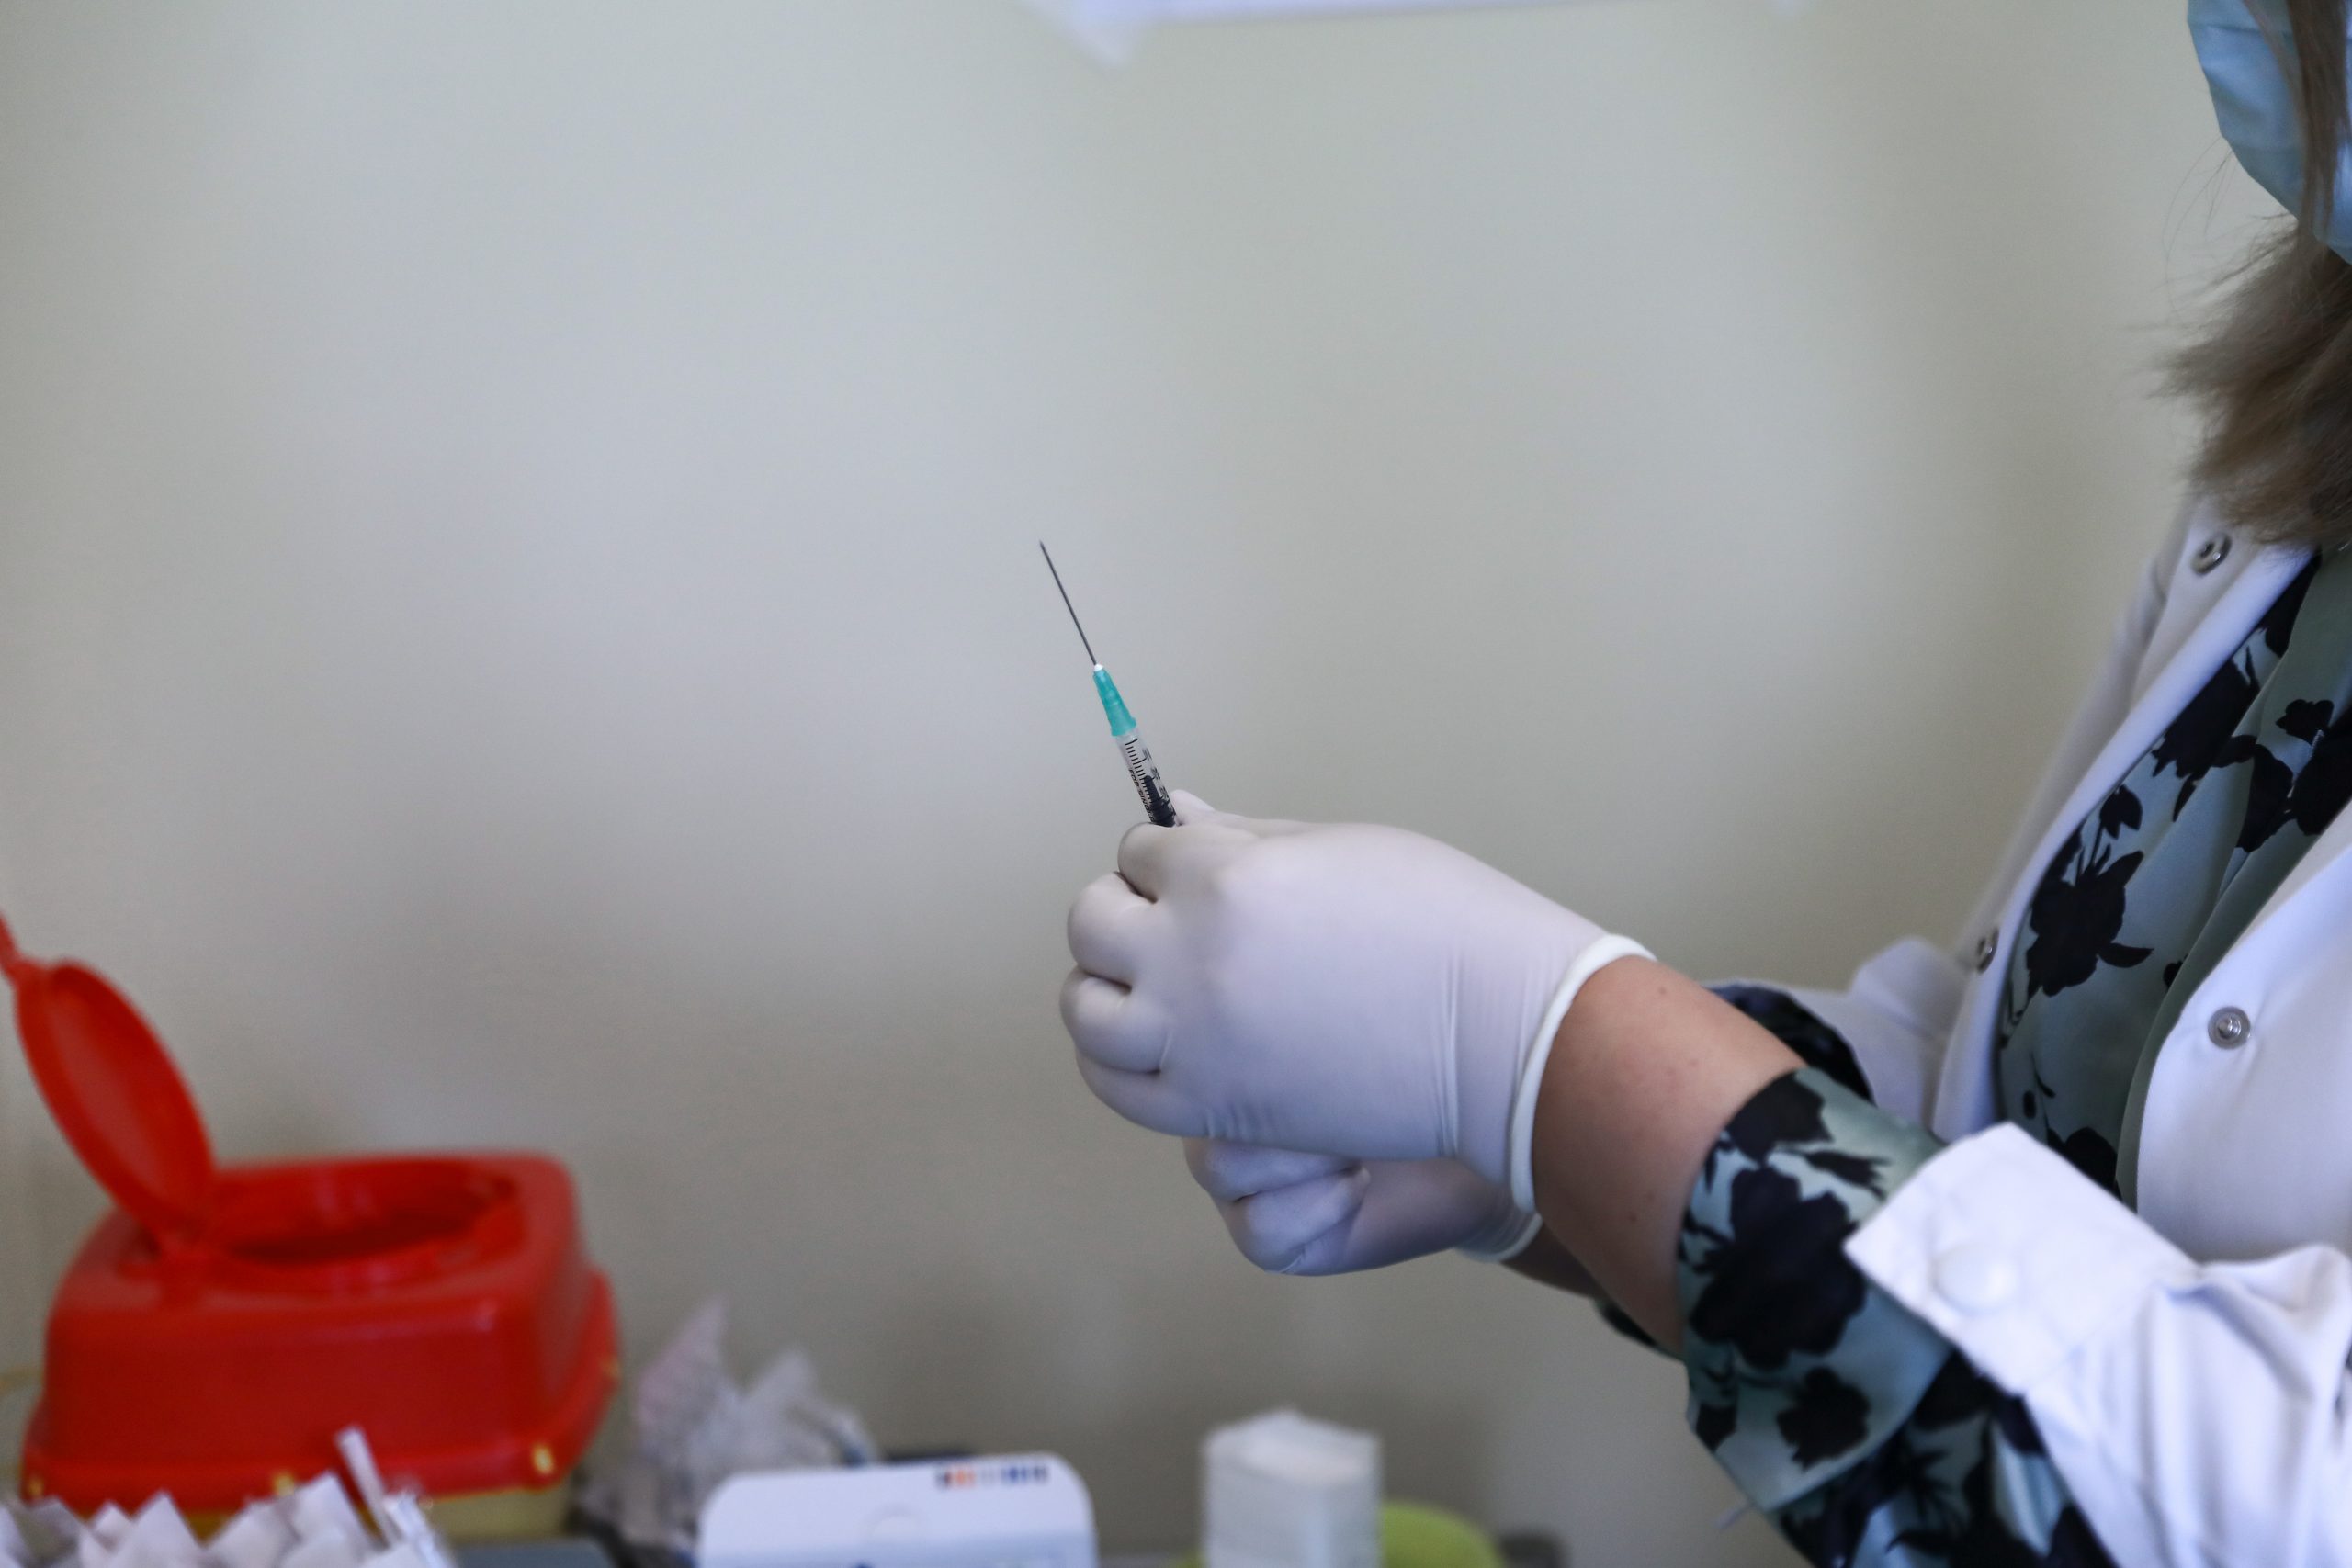 Πιερρακάκης: Έρχεται κατάργηση του sms! Κλείστηκαν 60.000 ραντεβού εμβολιασμών από τους 30-39 ετών